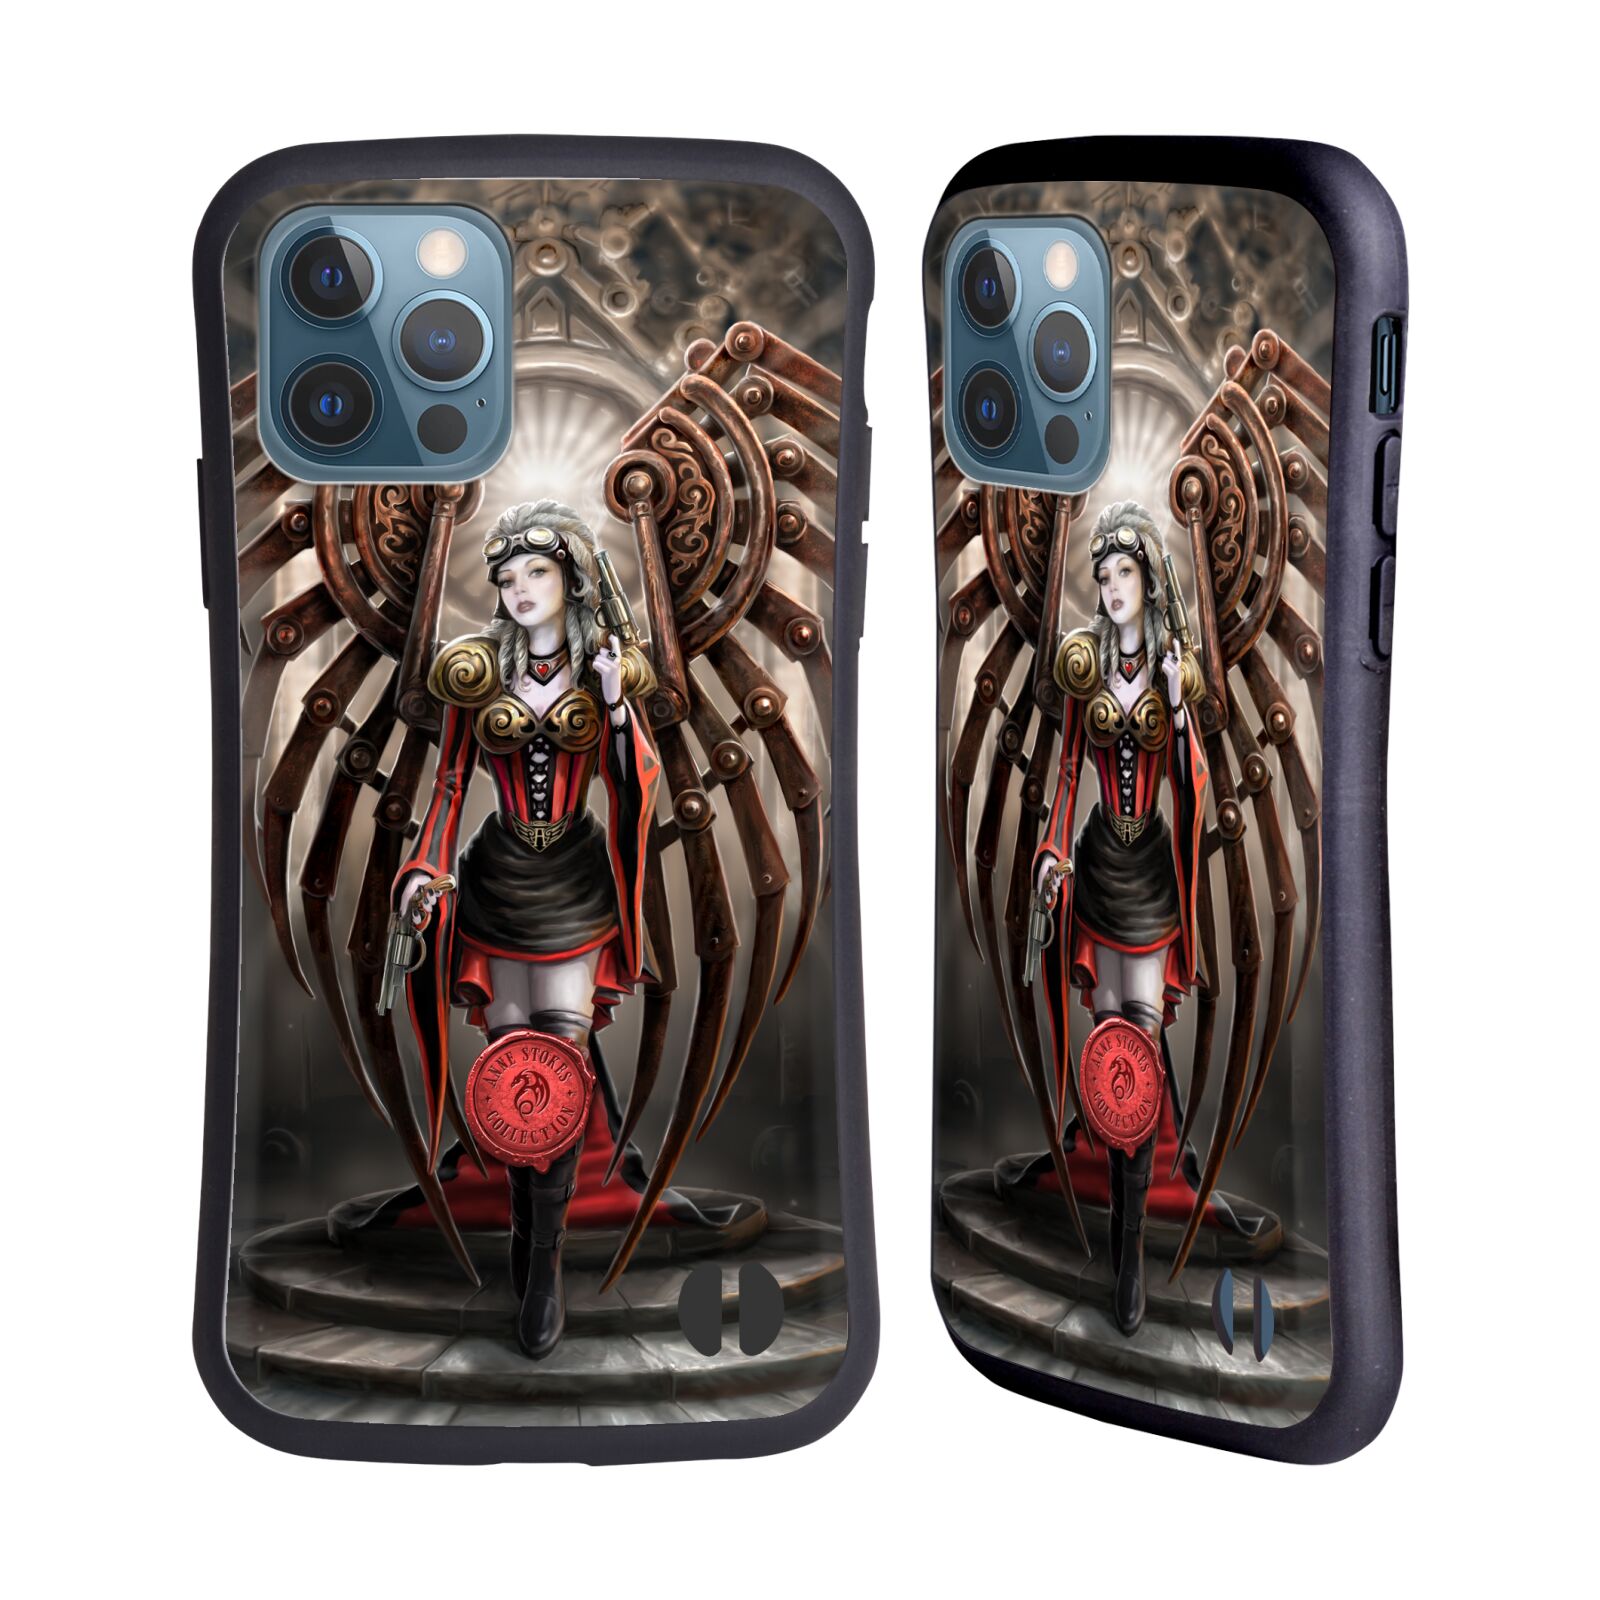 Odolný zadní obal pro mobil Apple iPhone 12 / iPhone 12 Pro - HEAD CASE - Anne Stokes - Steampunk anděl